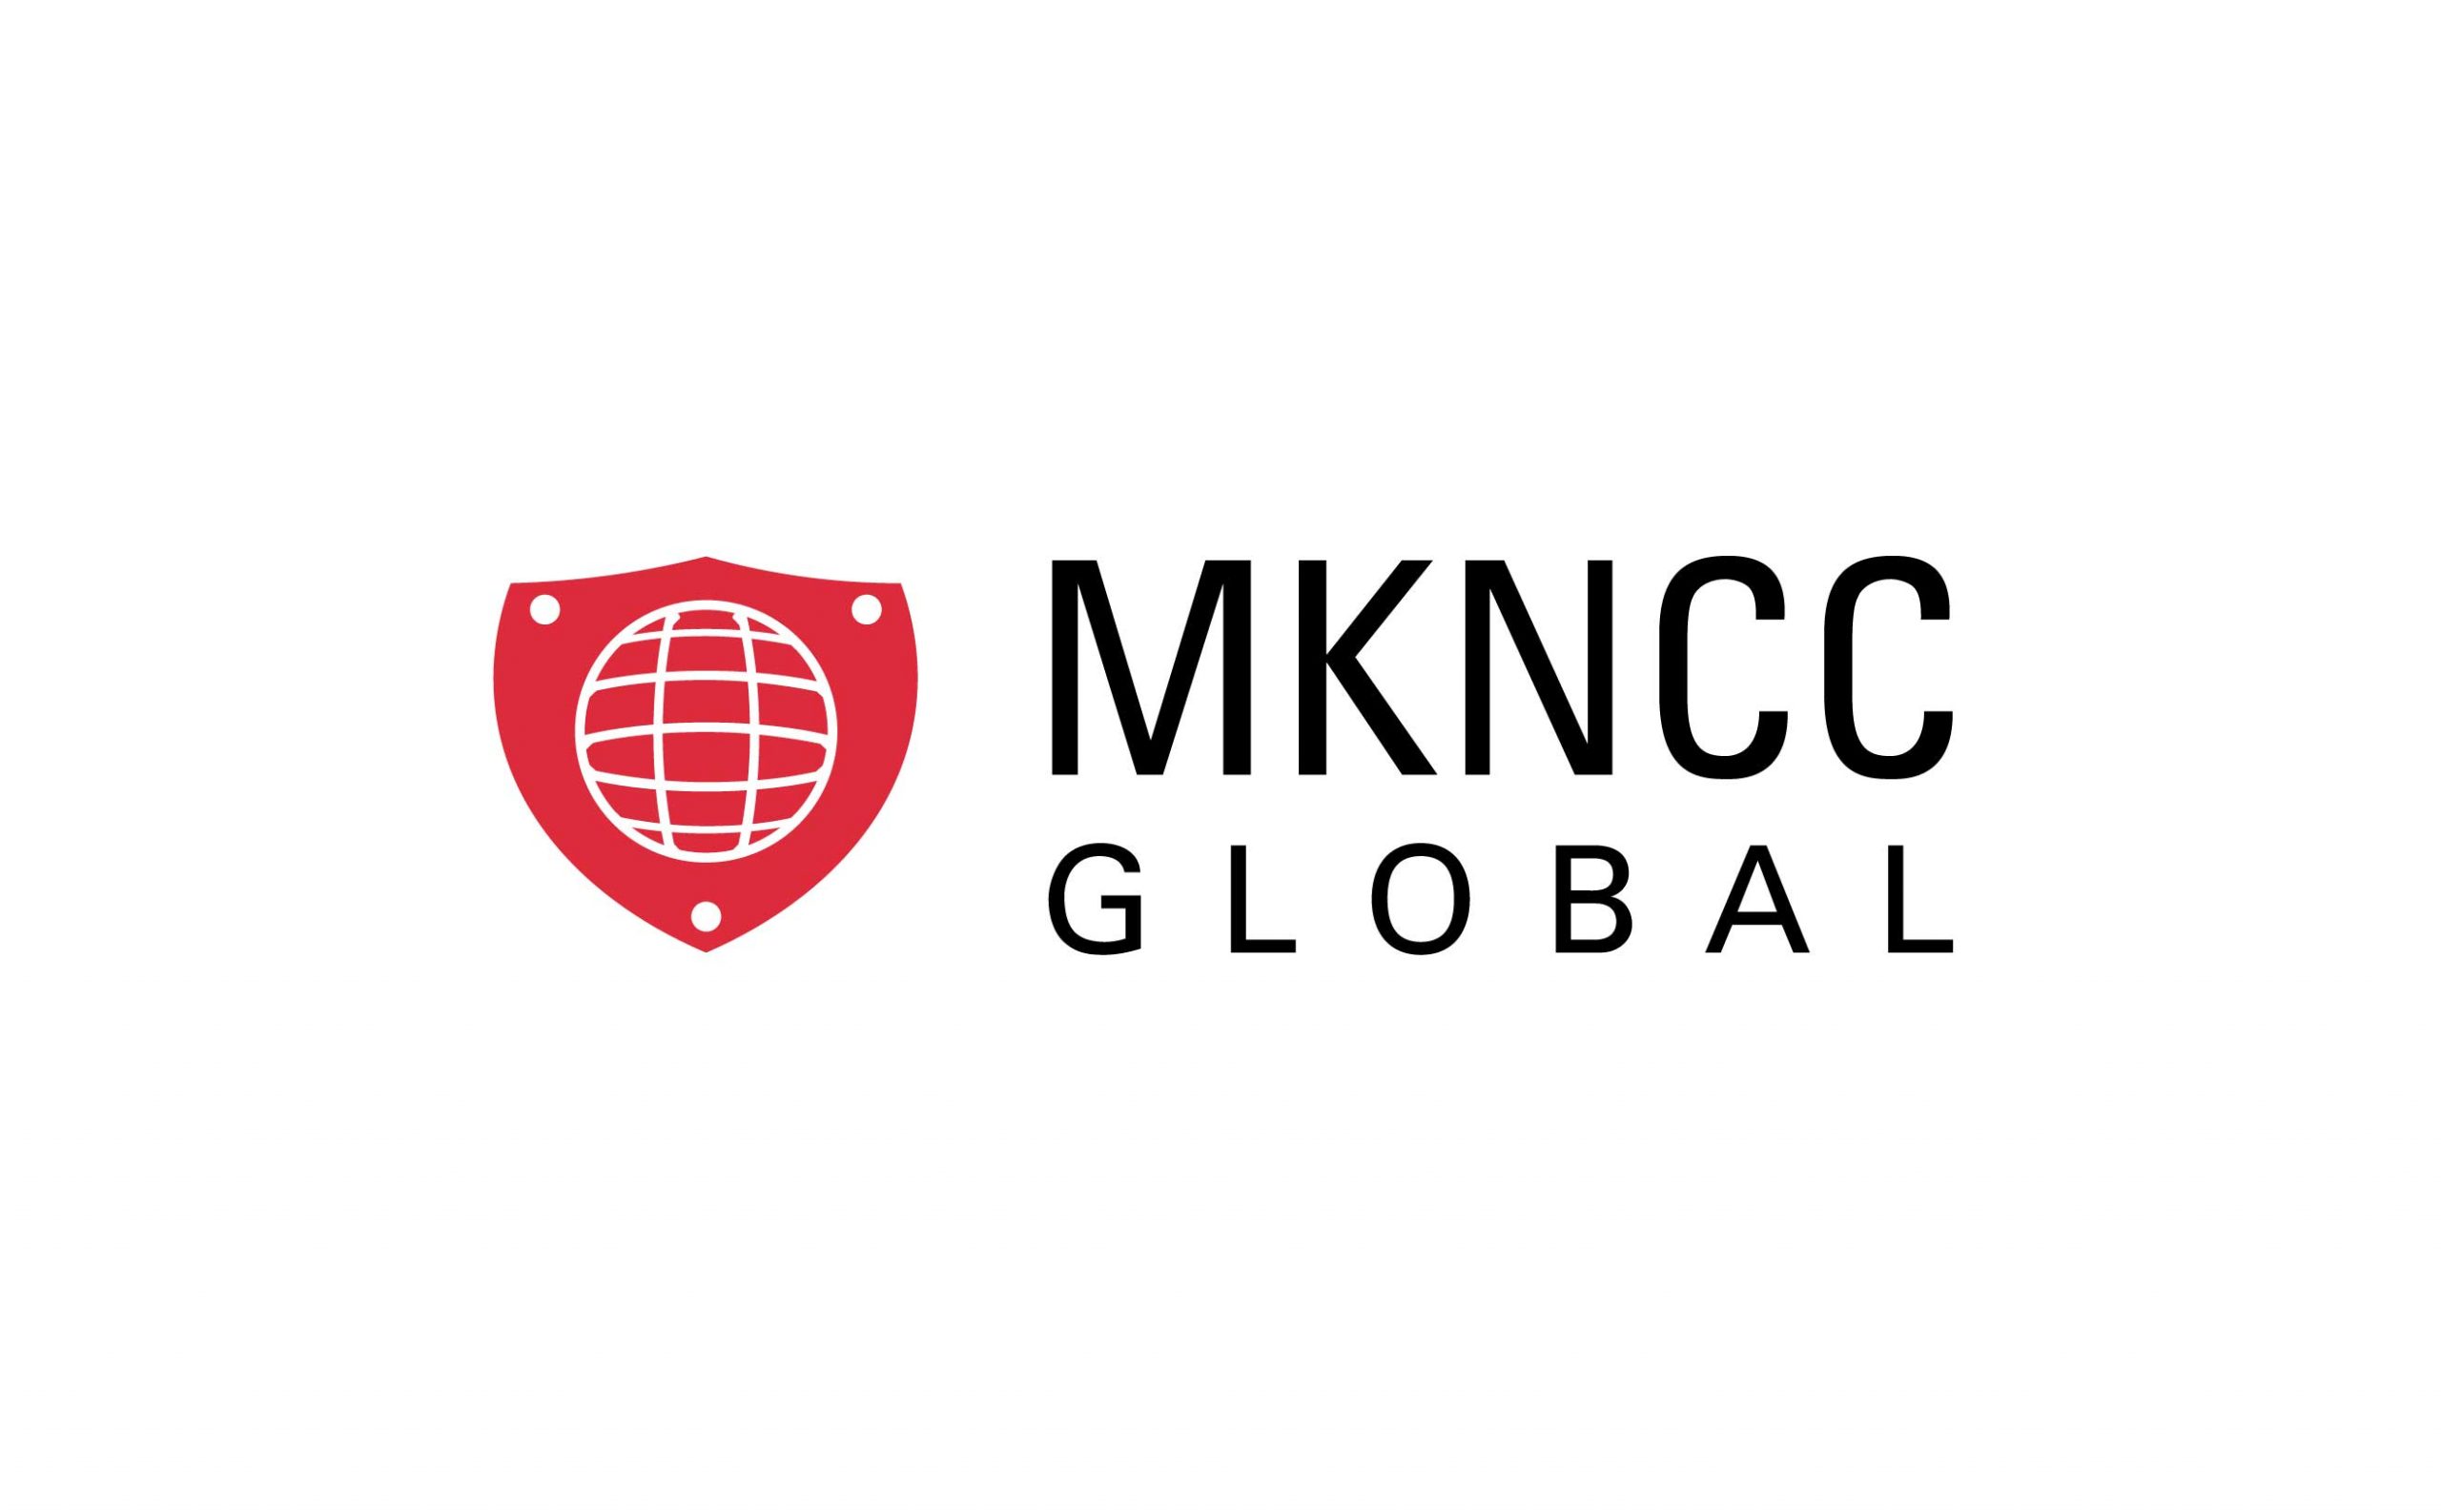 MKNCC Global